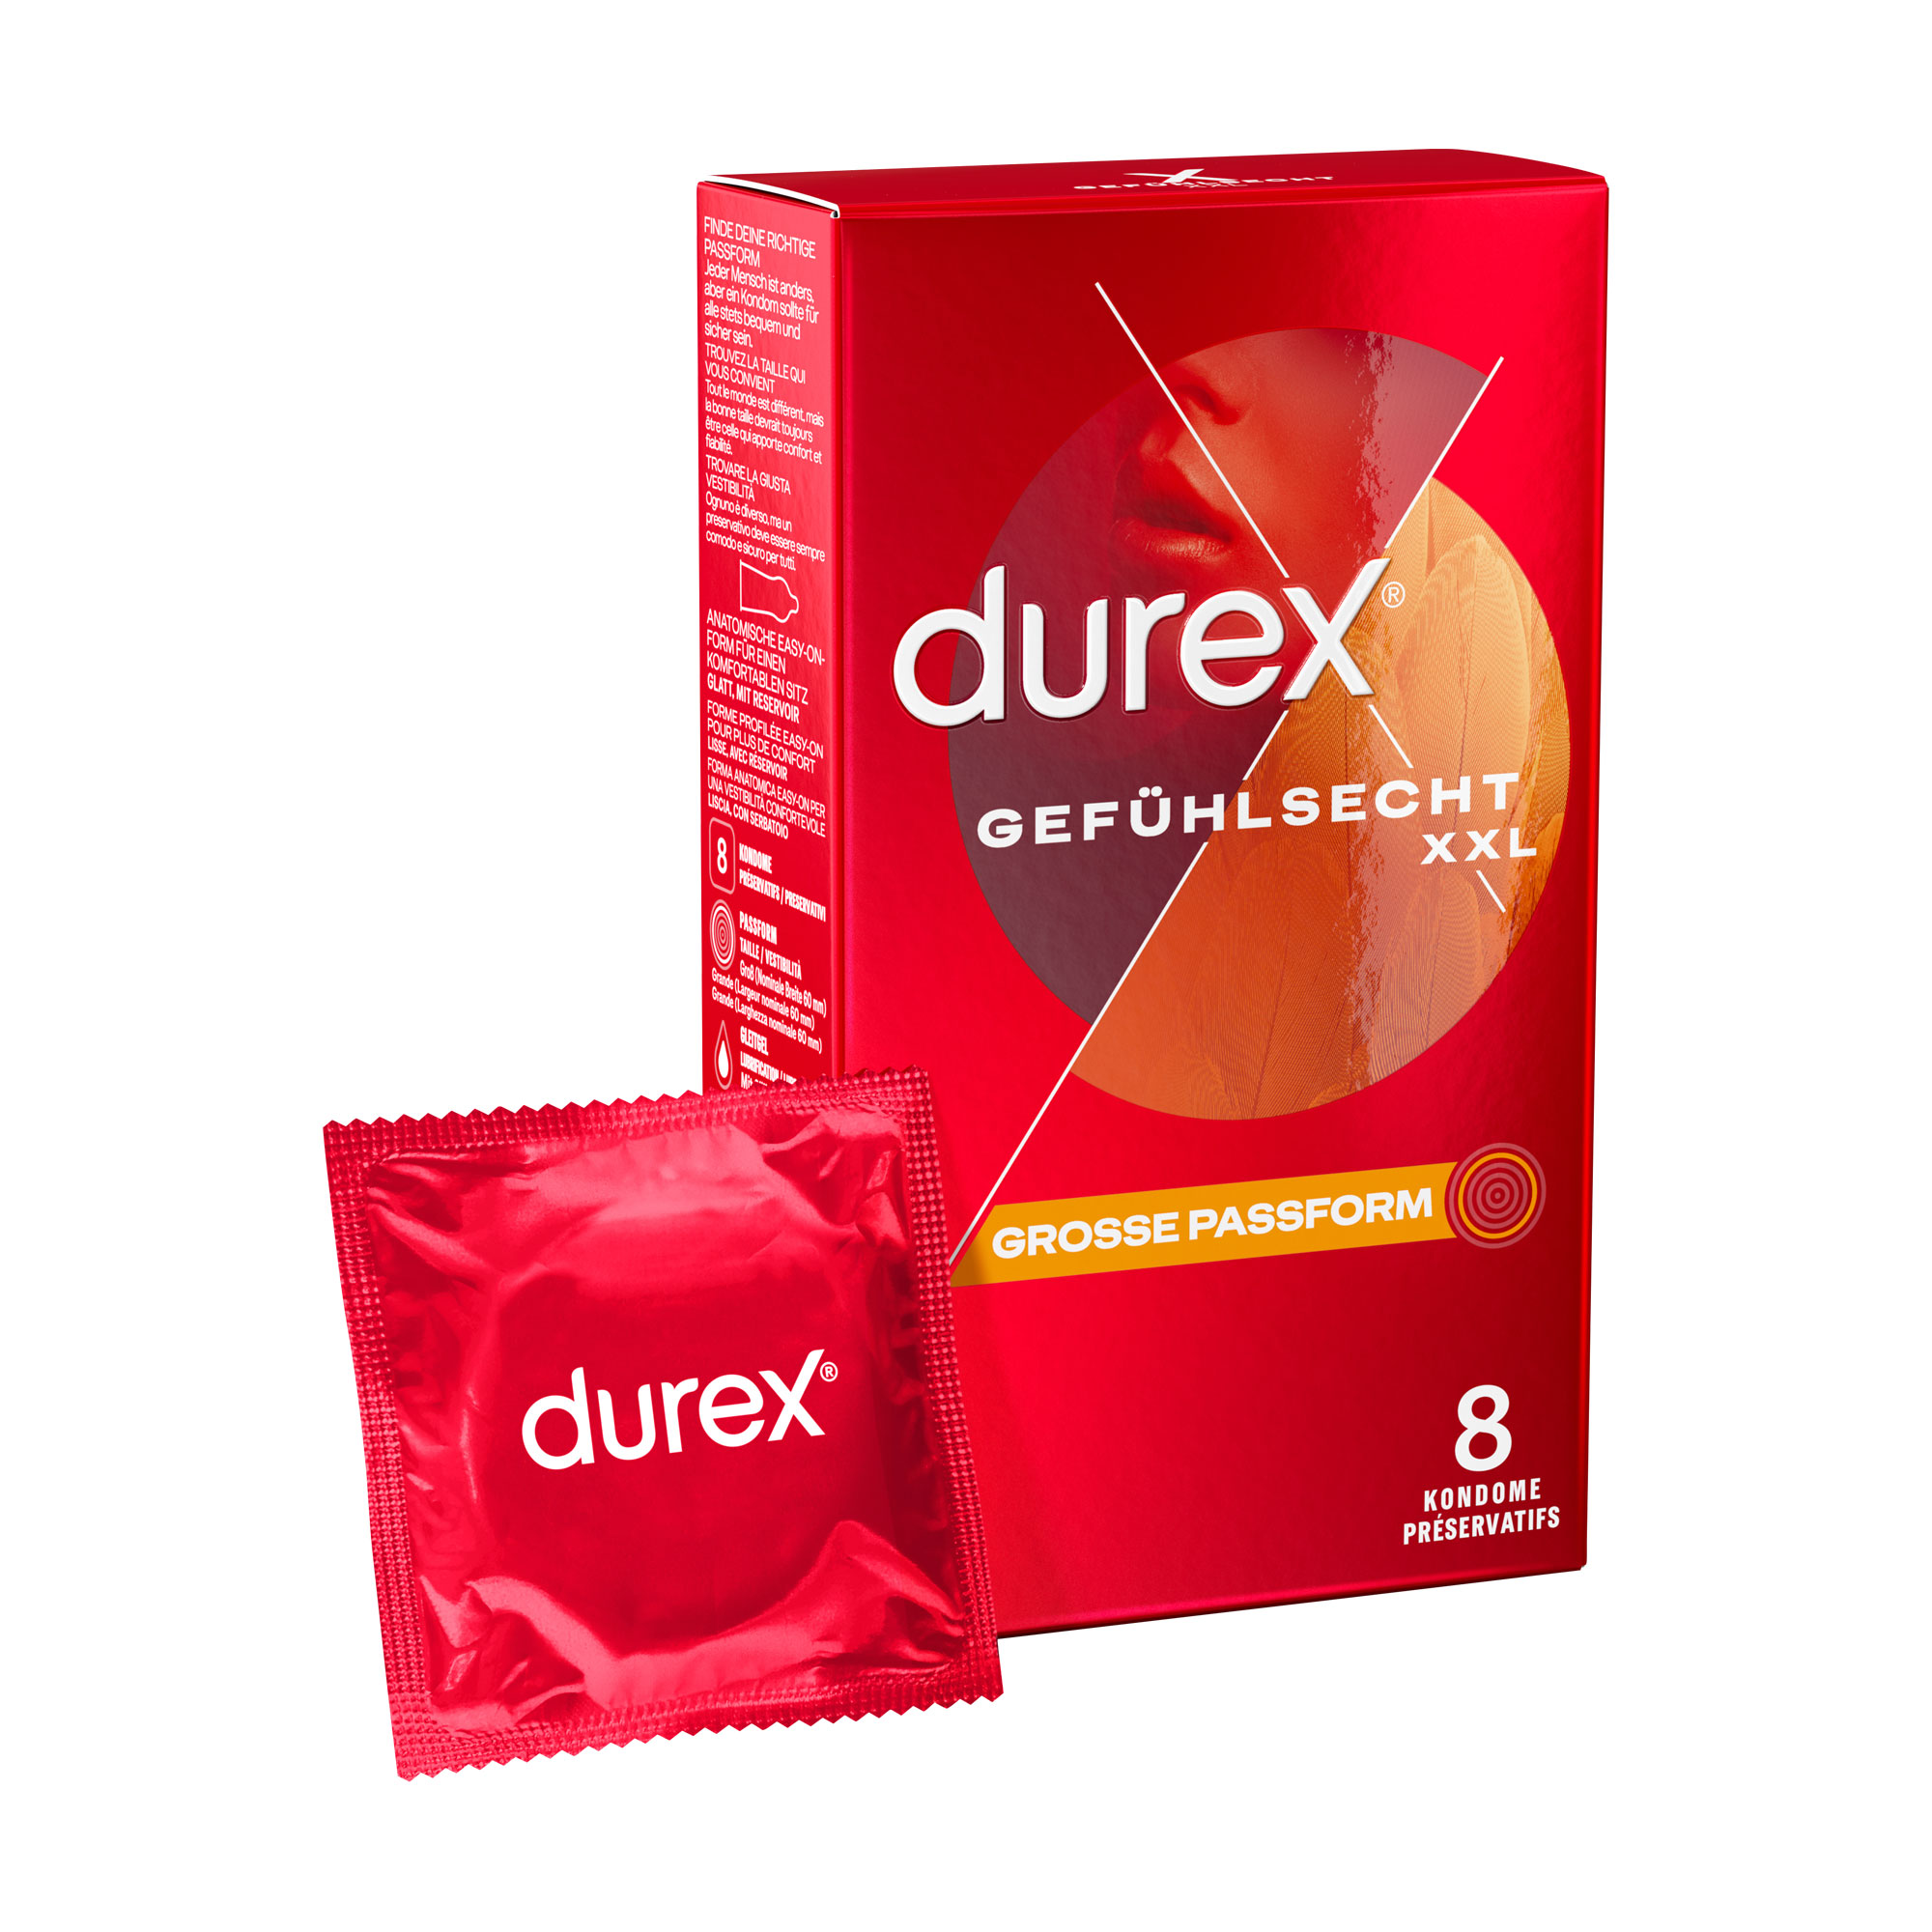 Dünne Kondome für ein intensives Gefühl und innige Zweisamkeit. Große Passform.